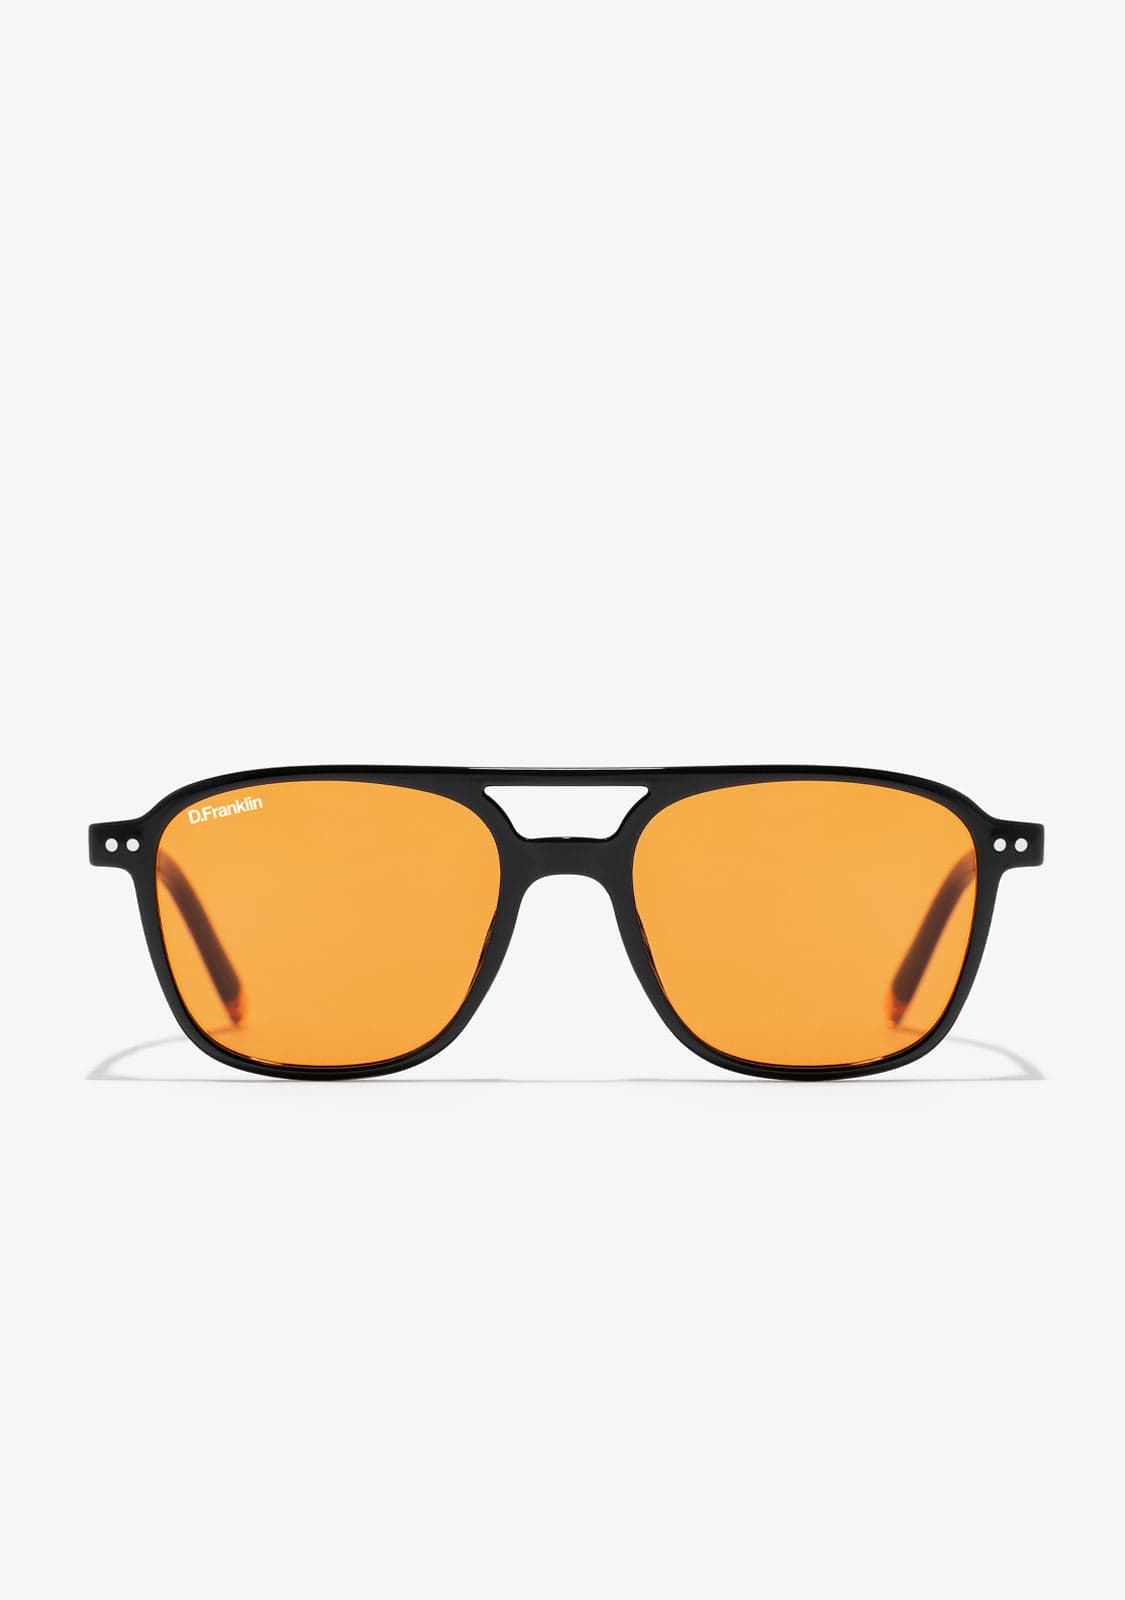 Gafas de sol rectangulares  Comprar gafas sol rectangulares hombre con  envío gratis en AliExpress